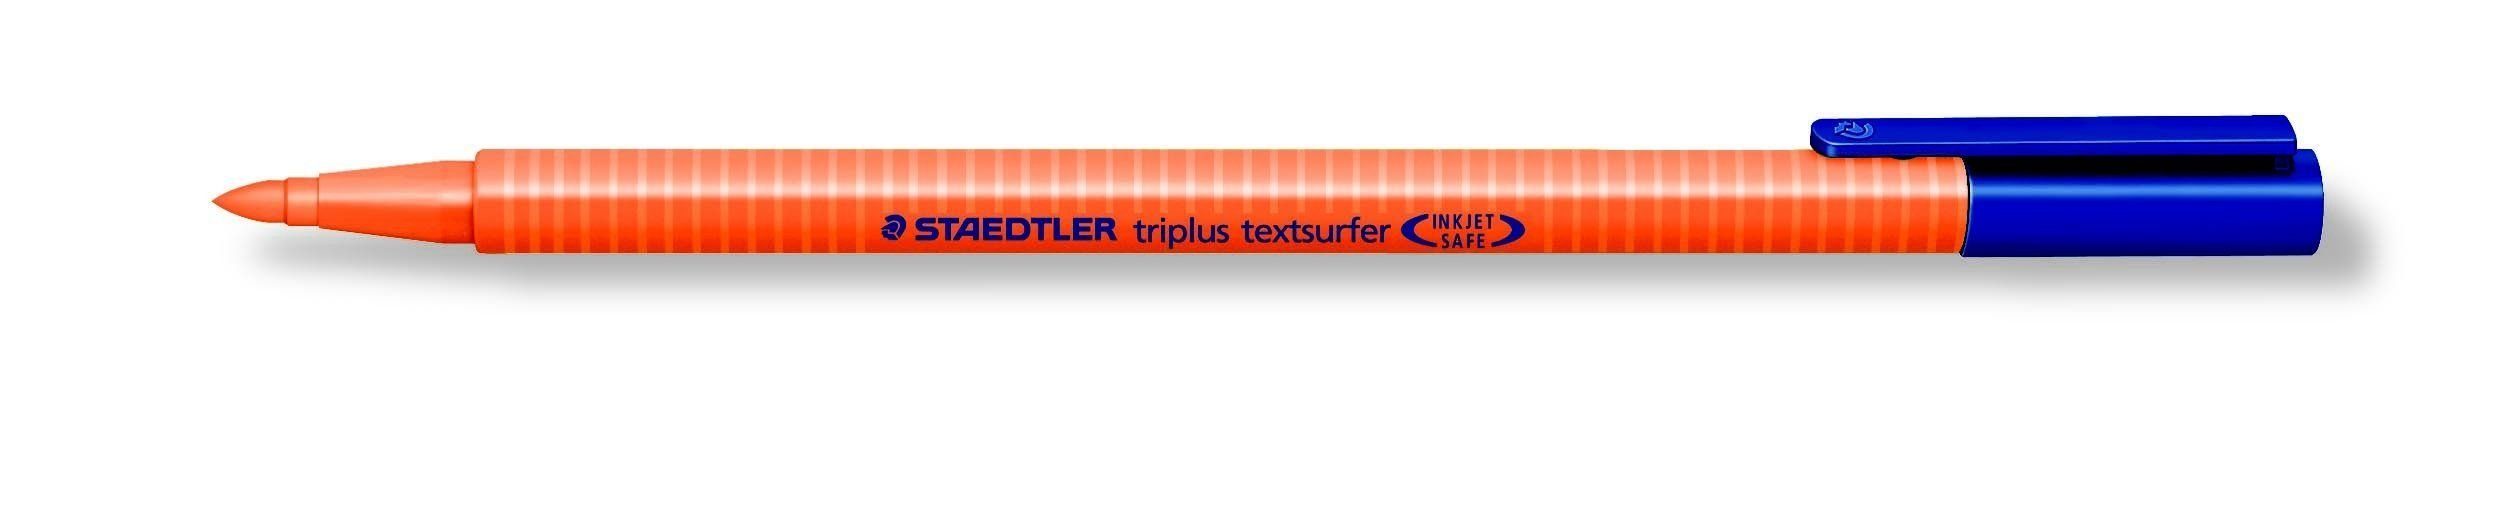 Kugelschreiber orange textsurfer STAEDTLER triplus Textmarker STAEDTLER